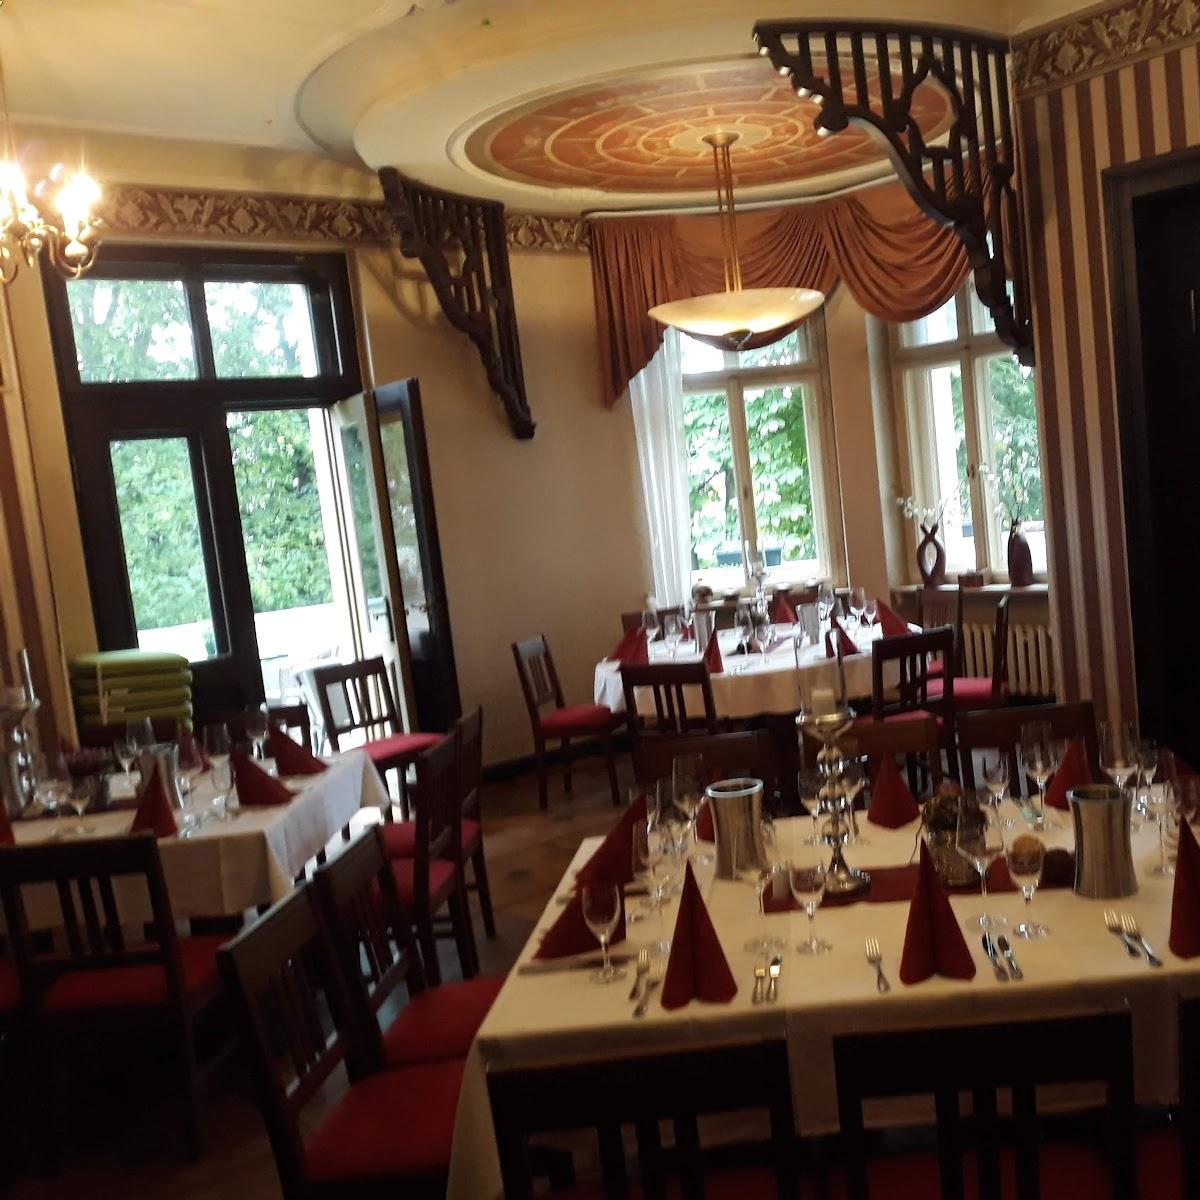 Restaurant "Brunello - Das mediterrane Restaurant" in Altenburg